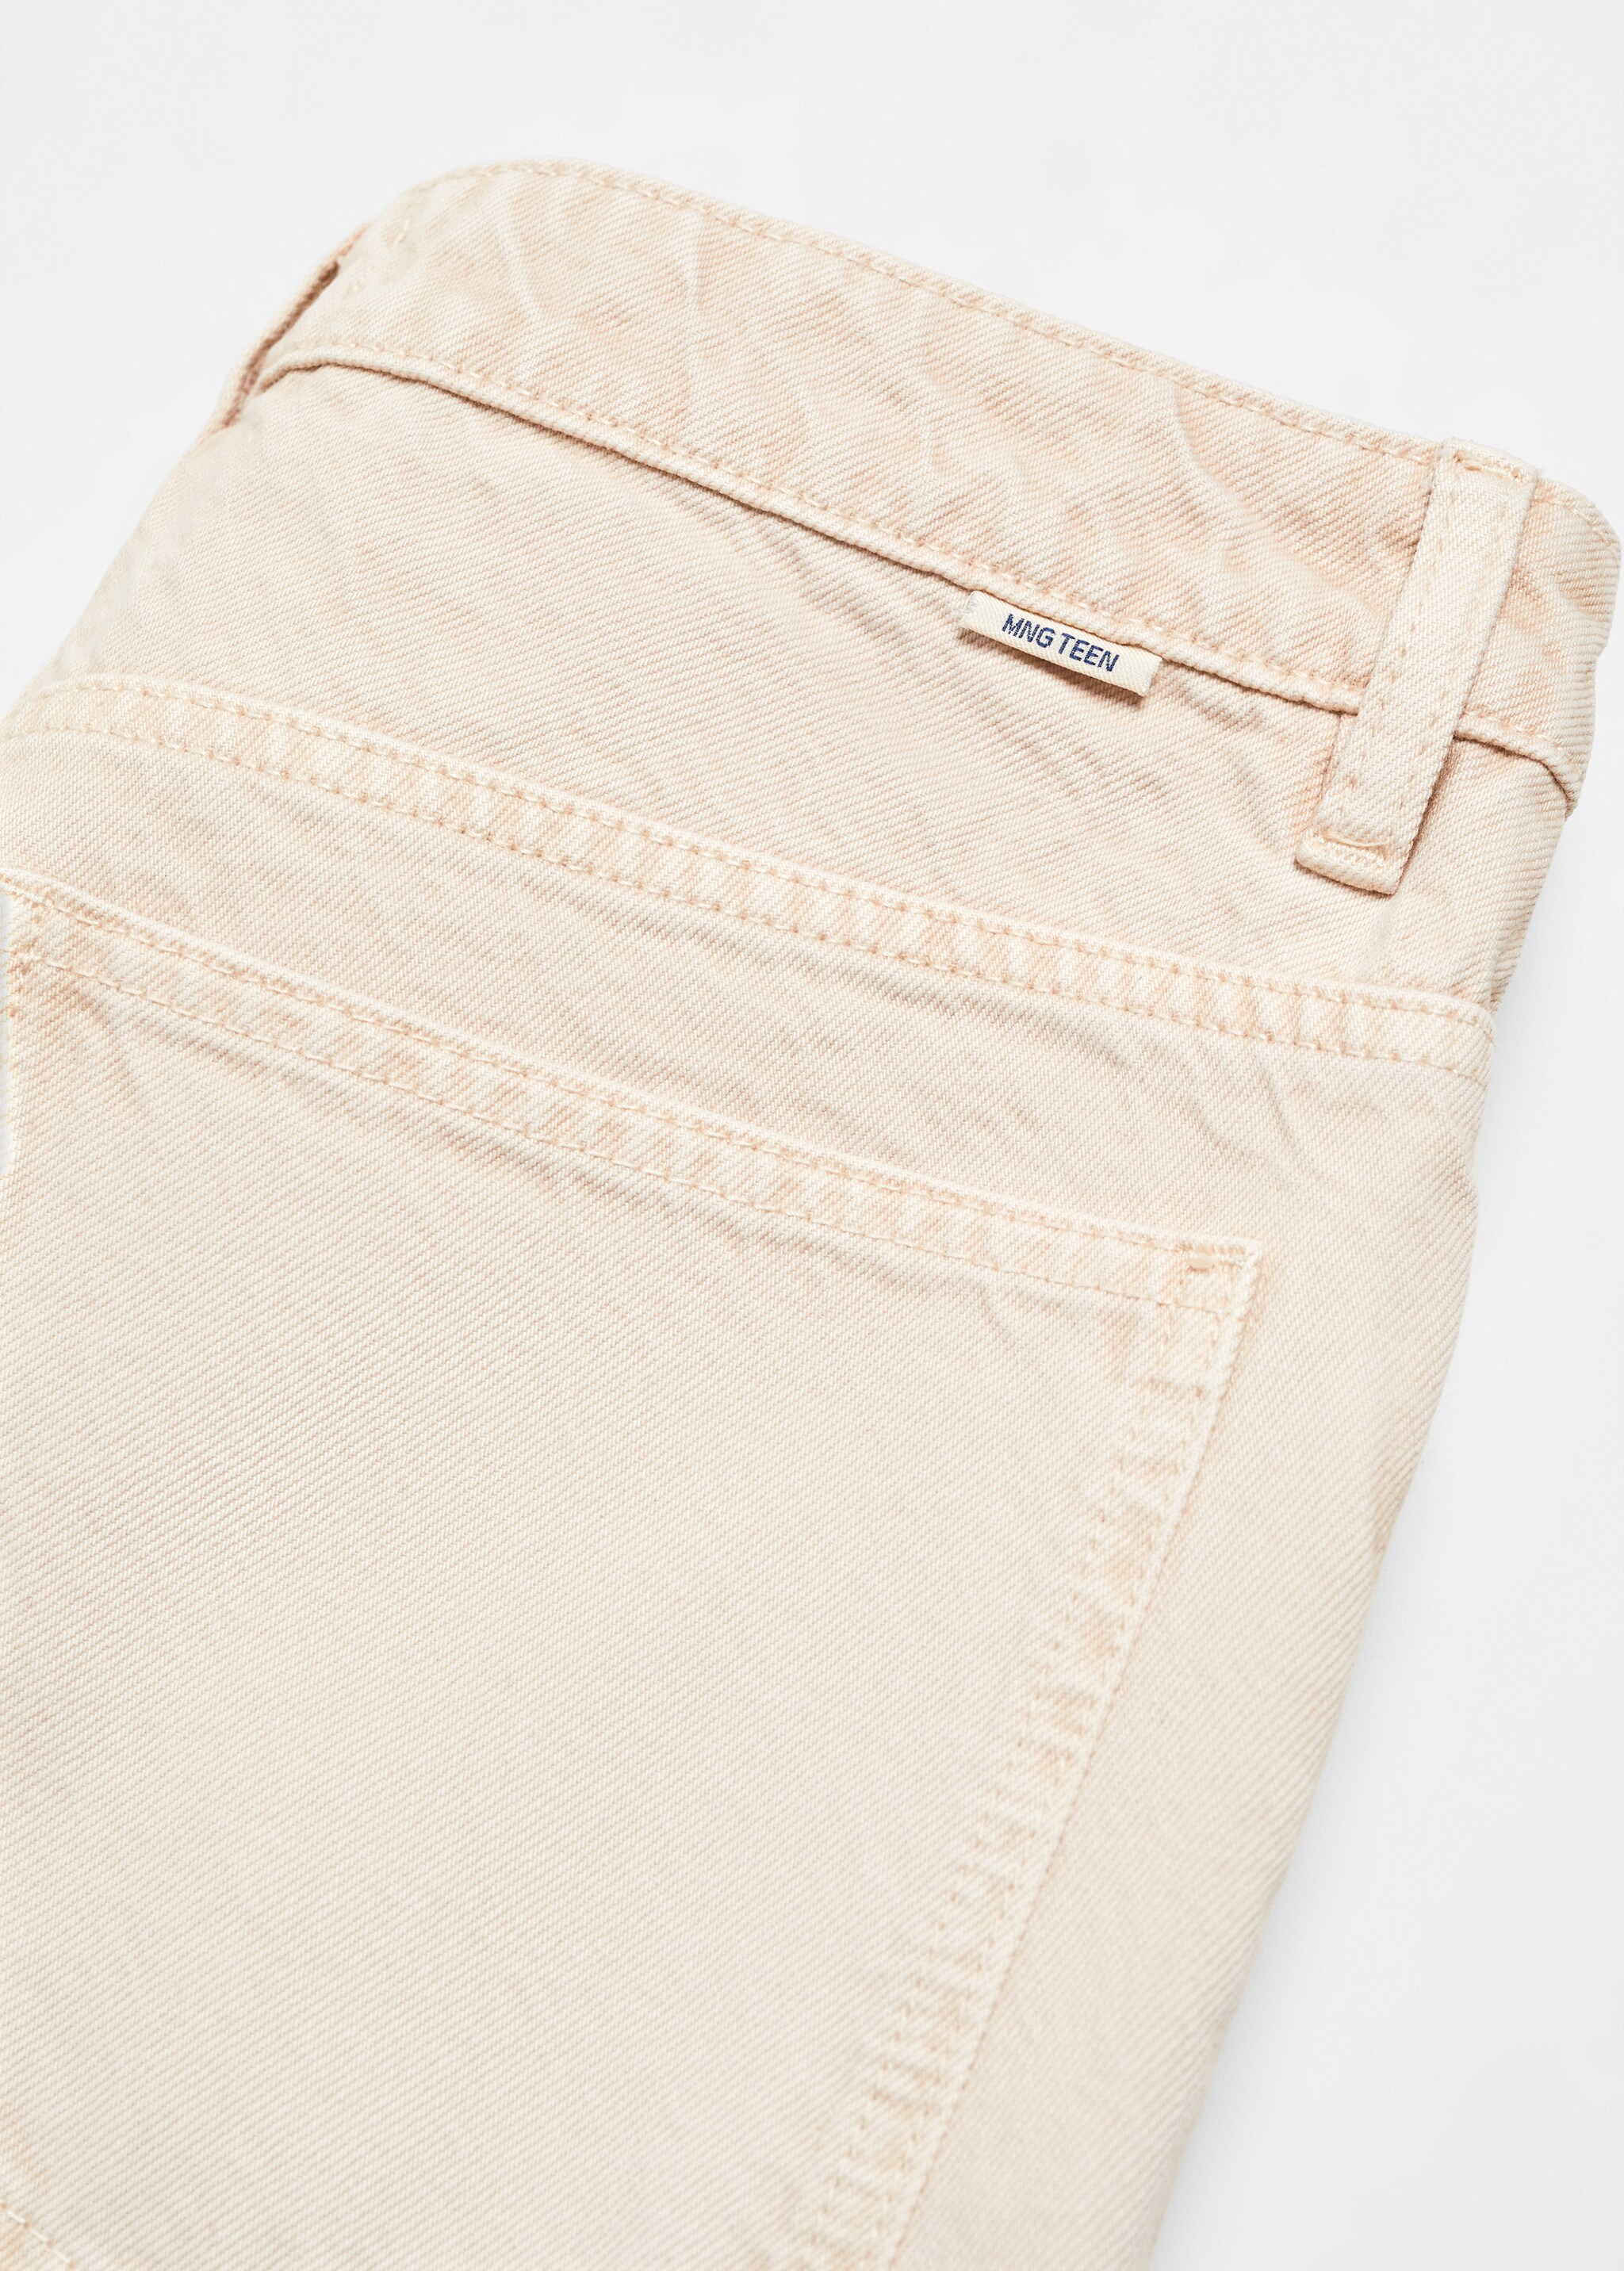 Pantalón regular fit algodón - Detalle del artículo 8